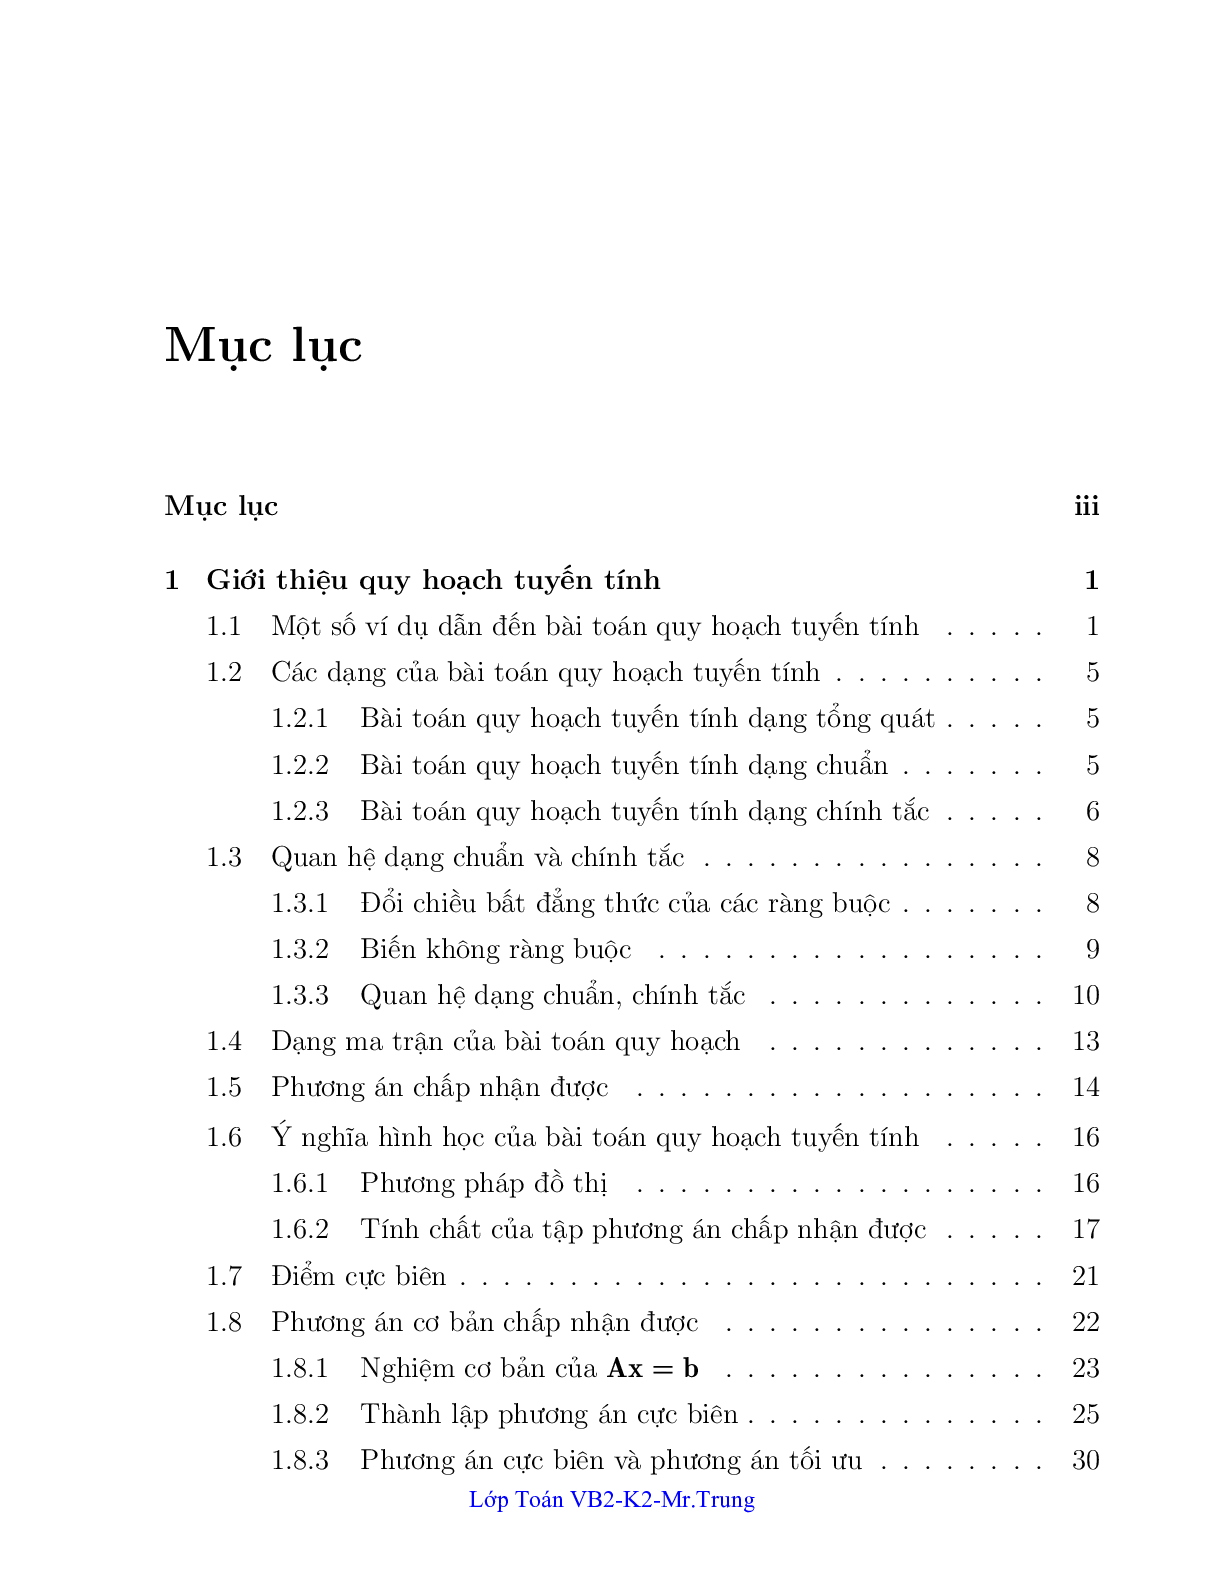 Ngân hàng bài toán Quy hoạch tuyến tính (có lời giải) | Trường Đại học Công nghiệp Thành phố Hồ Chí Minh (trang 1)